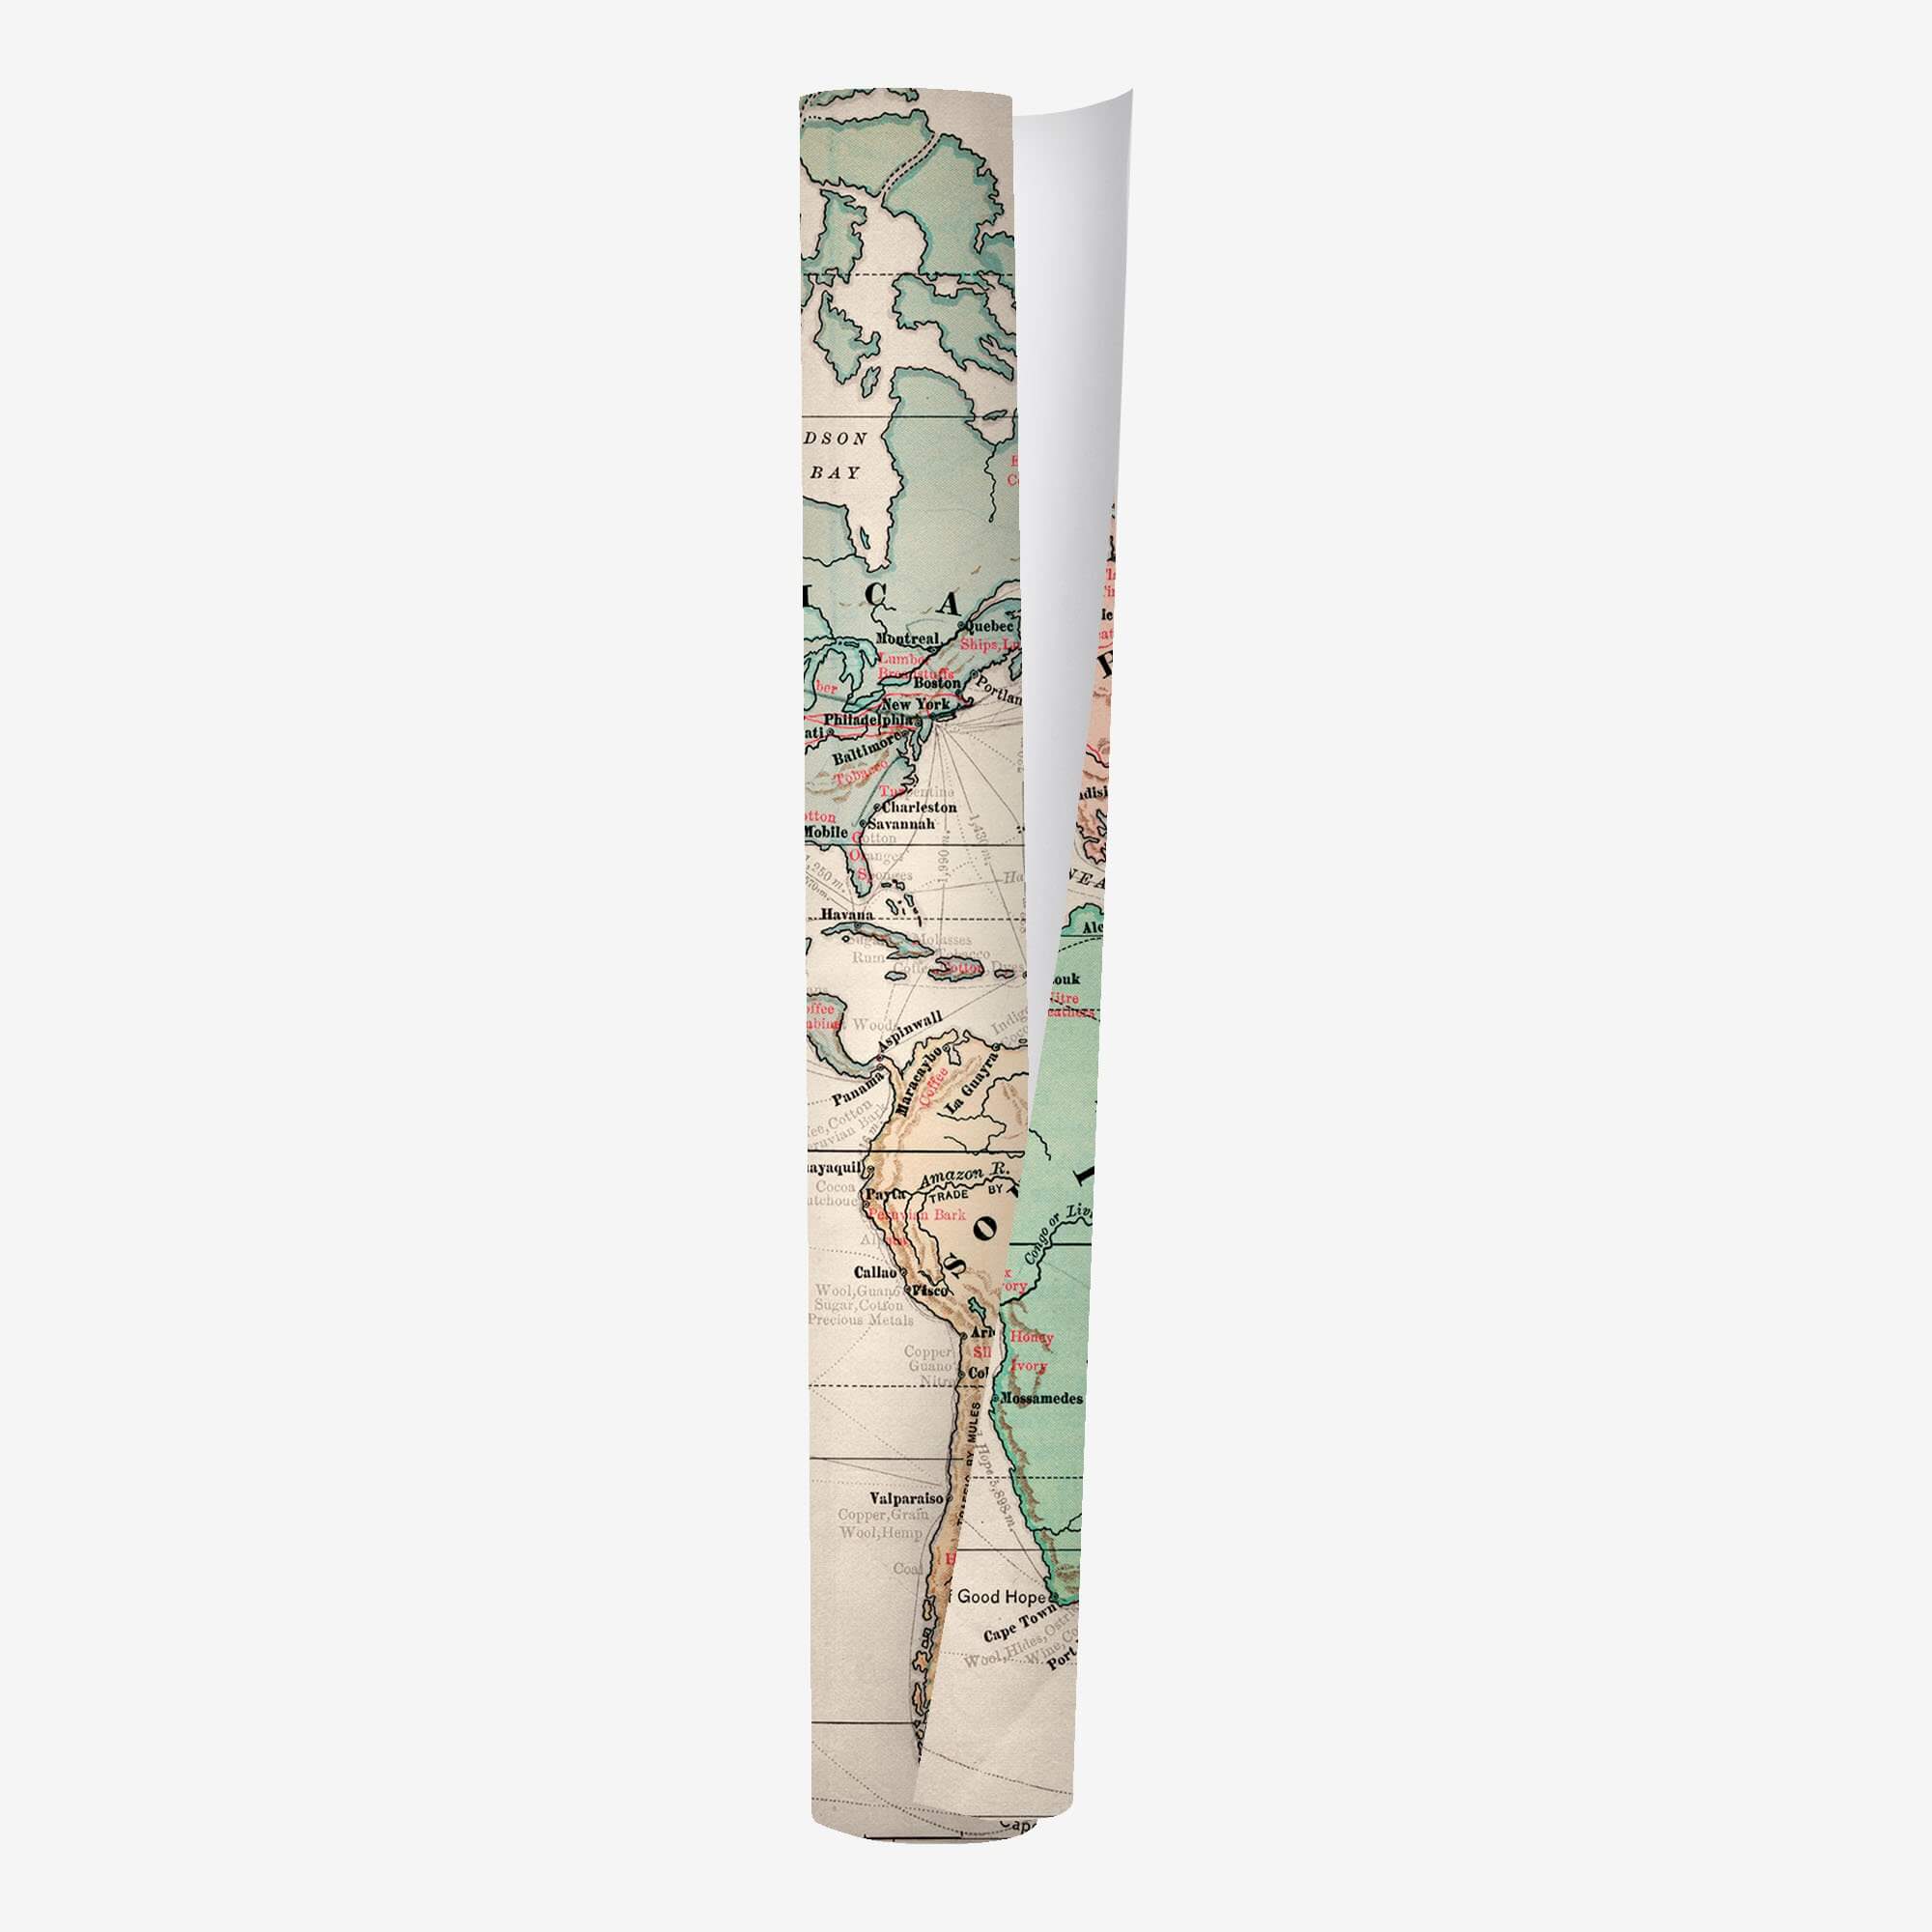 Wrapping Paper - Rouleau papier cadeau 70x200 cm Legami 